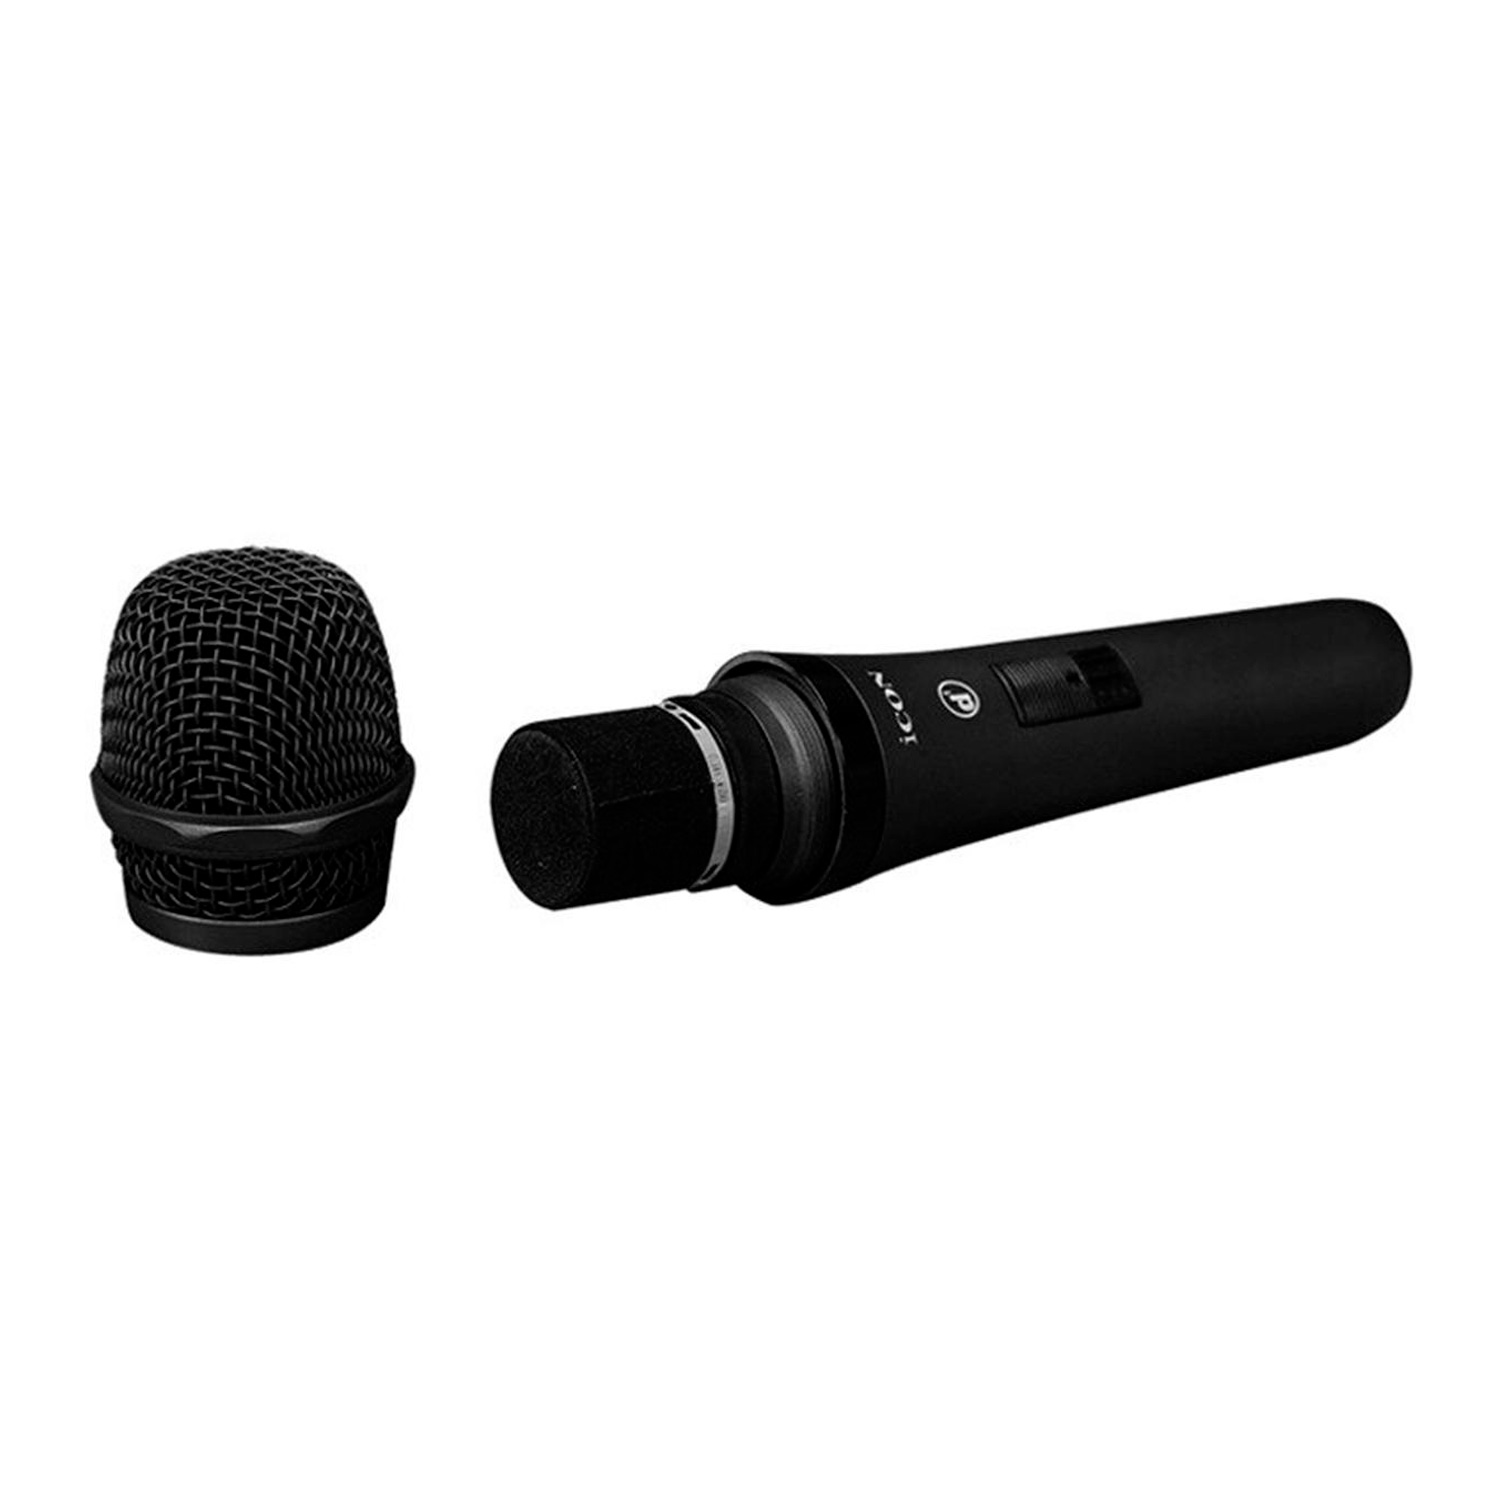 iCON D1 вокальный микрофон